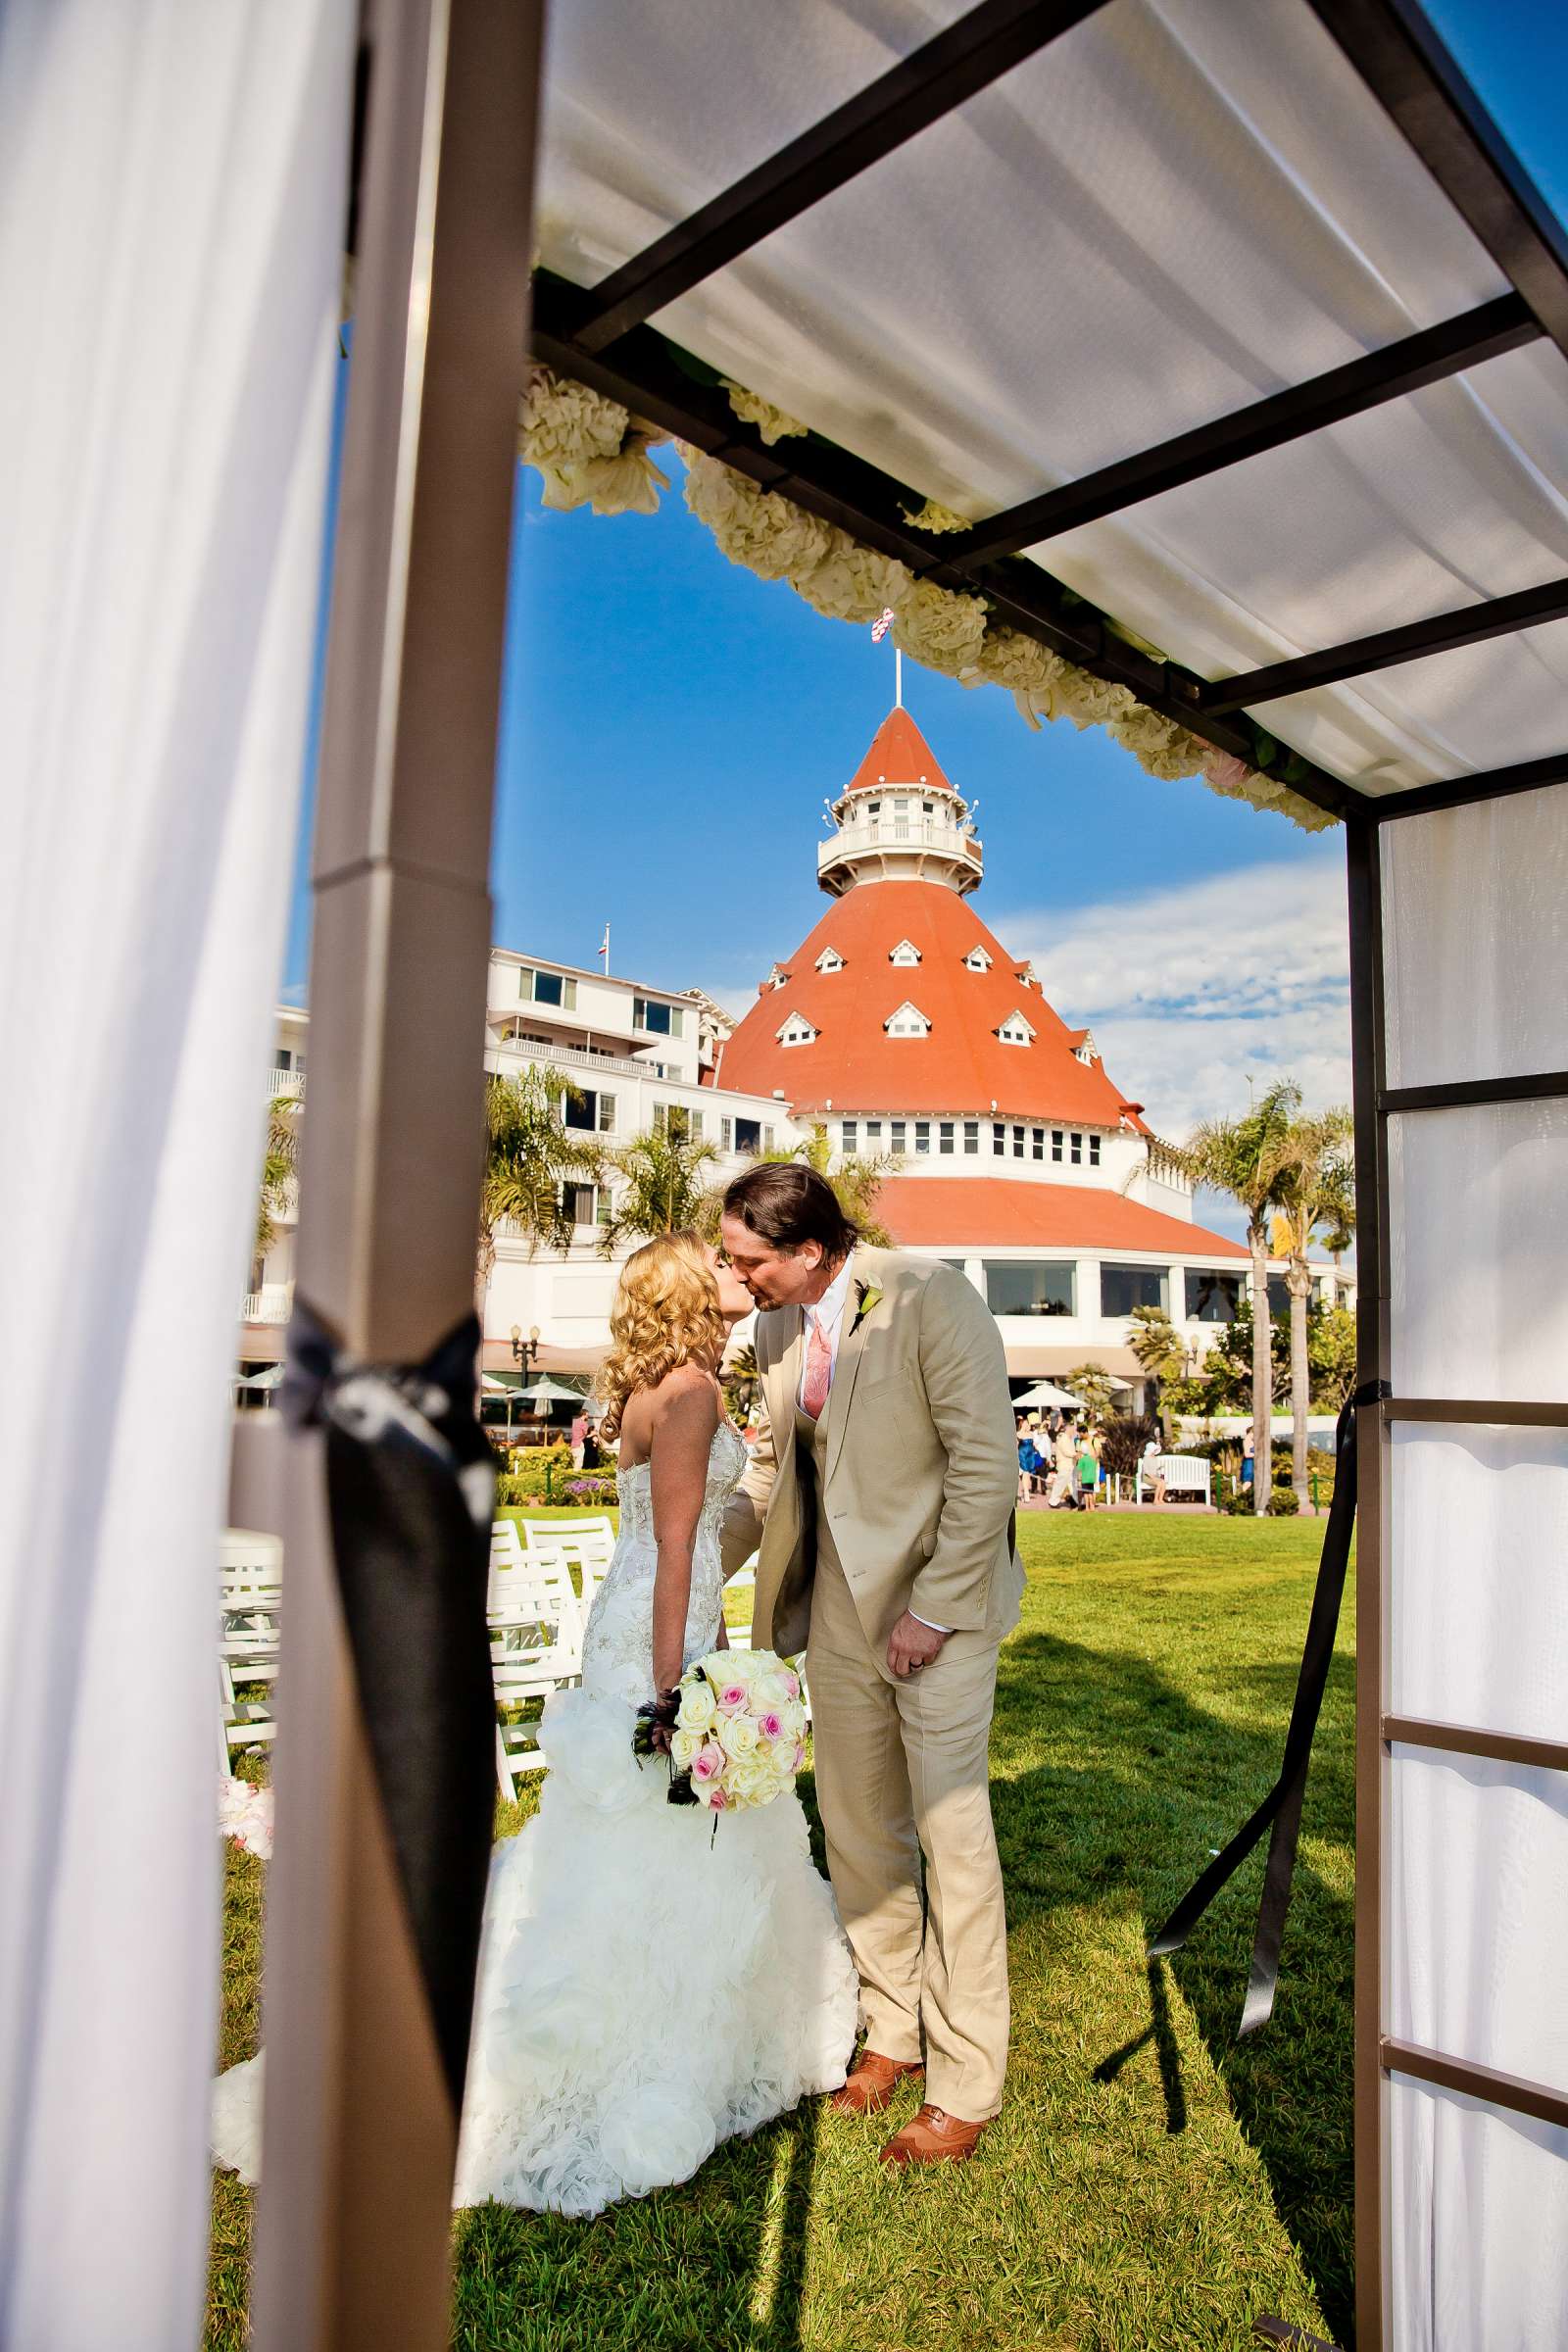 Hotel Del Coronado Wedding, Sarah and Tony Wedding Photo #323718 by True Photography